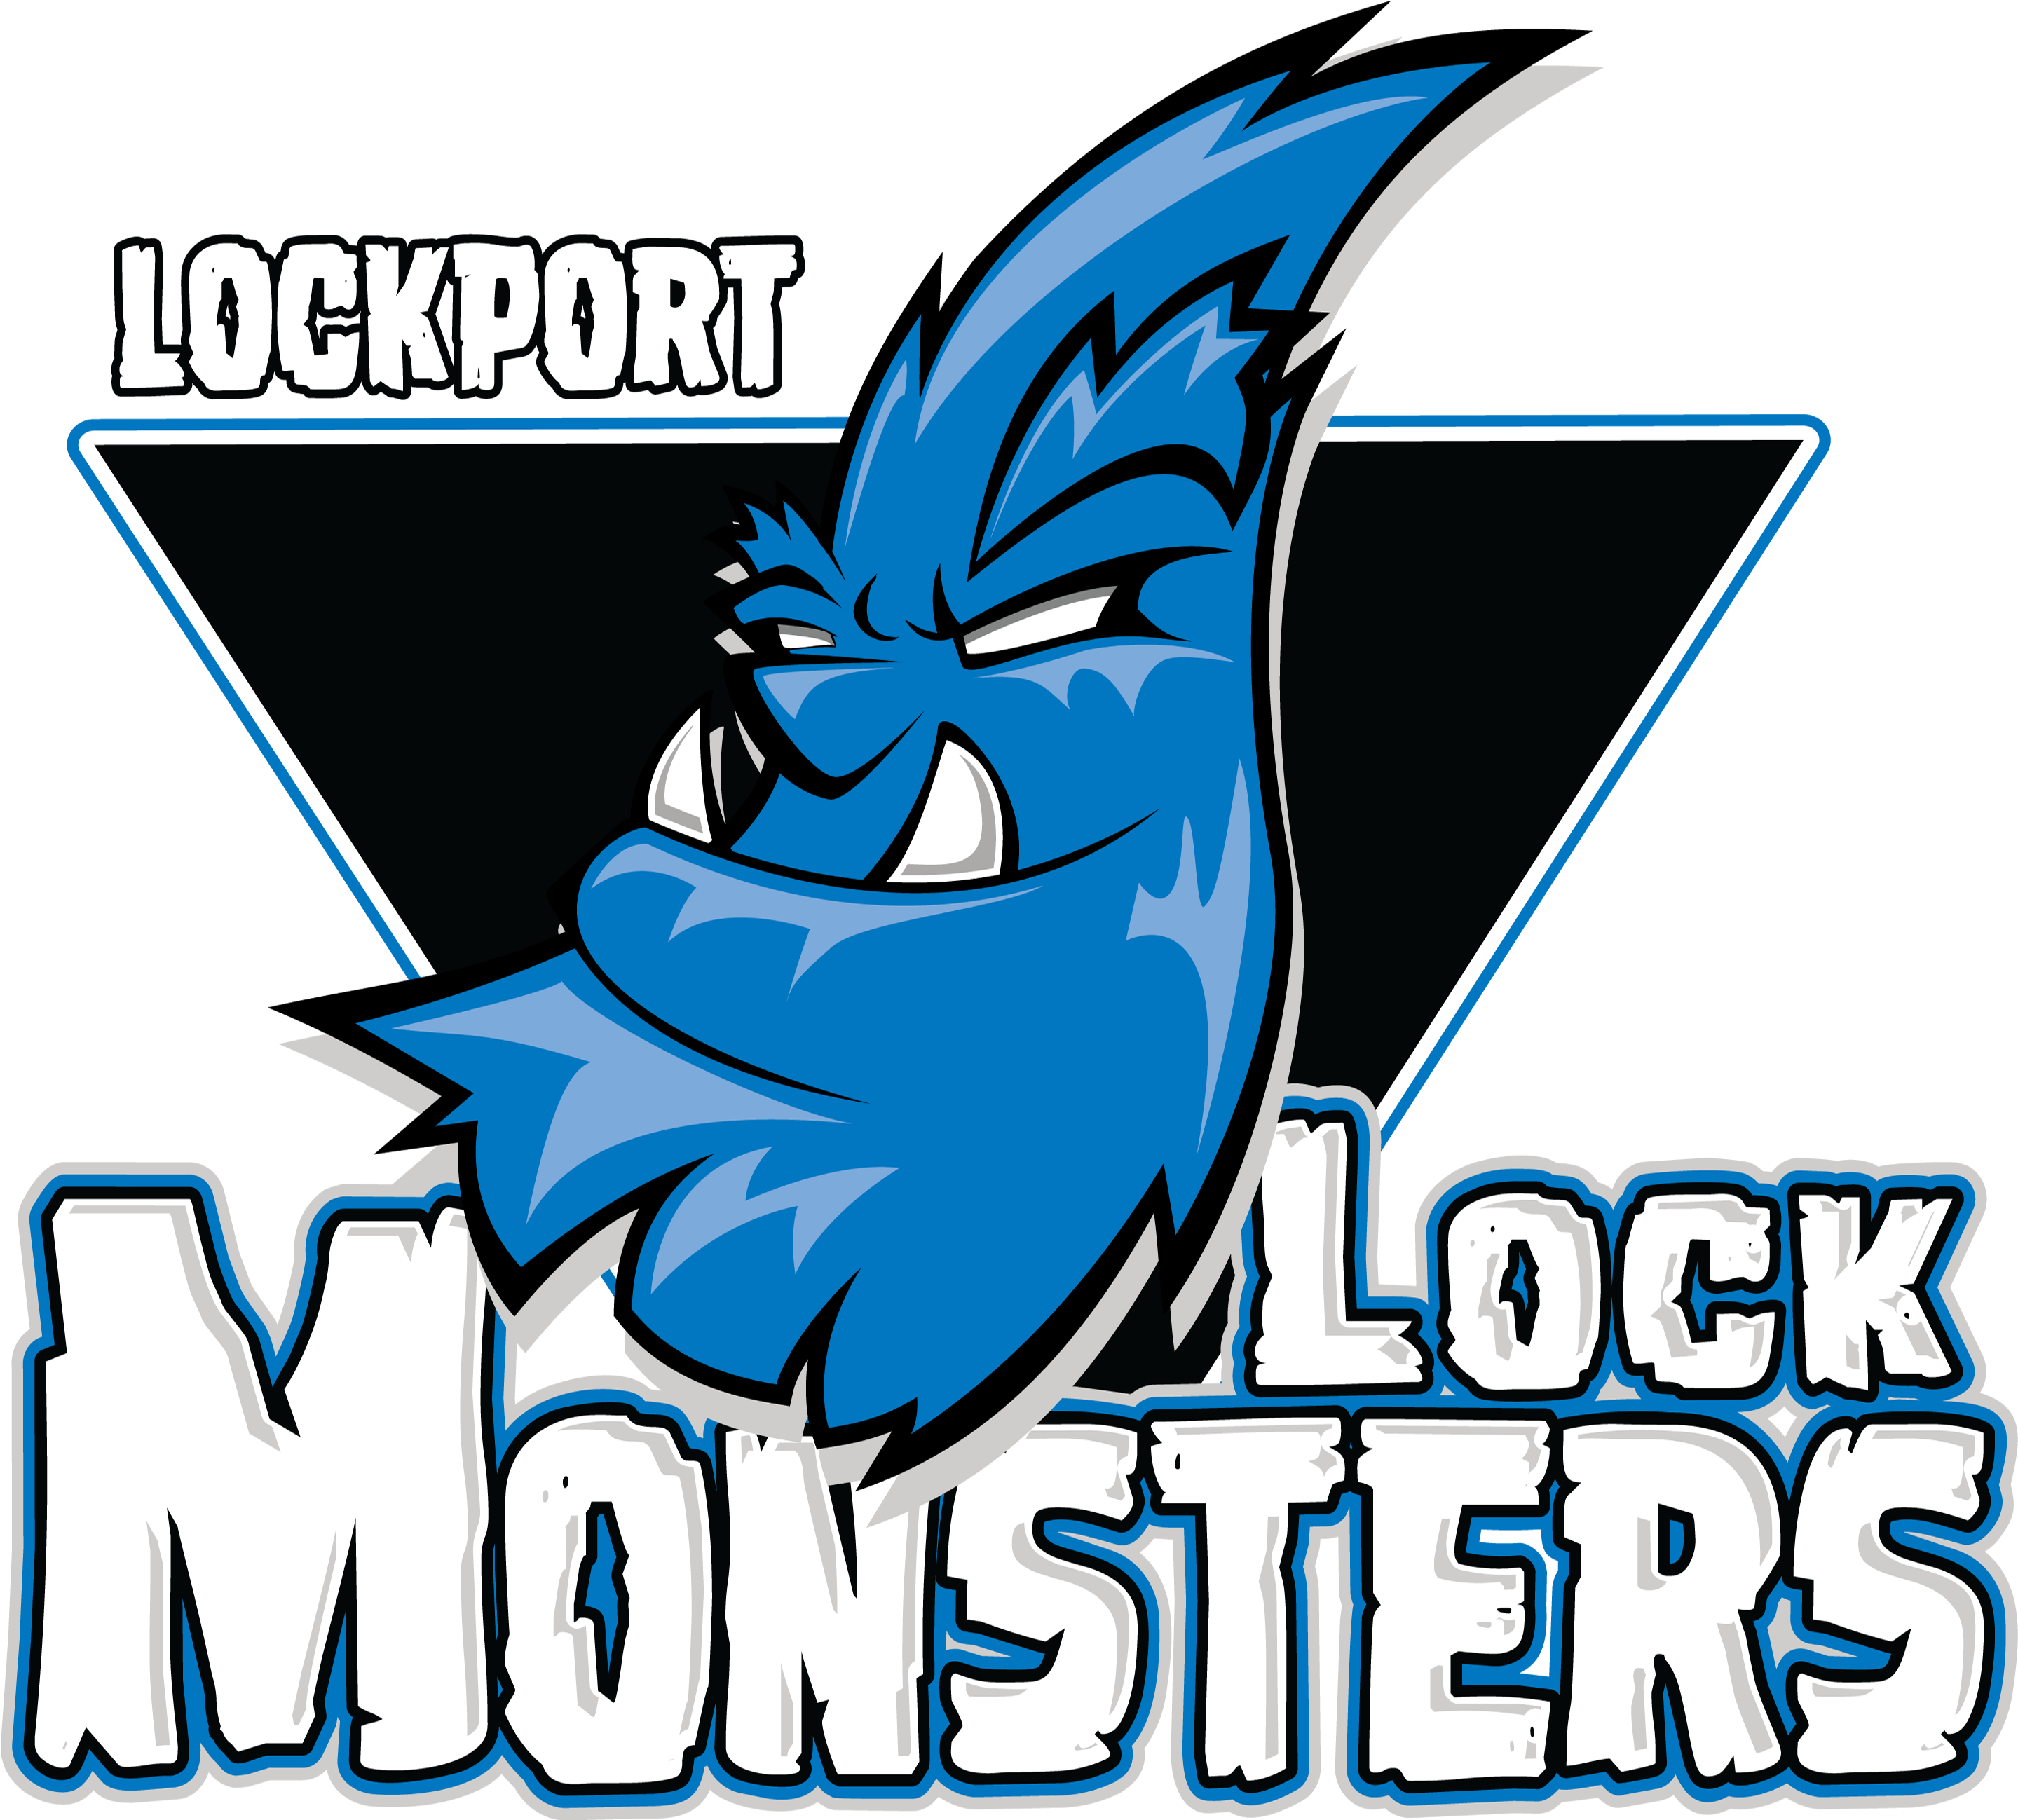 Lock-monsters - Lockport Lock Monsters Hockey (2878x2878)